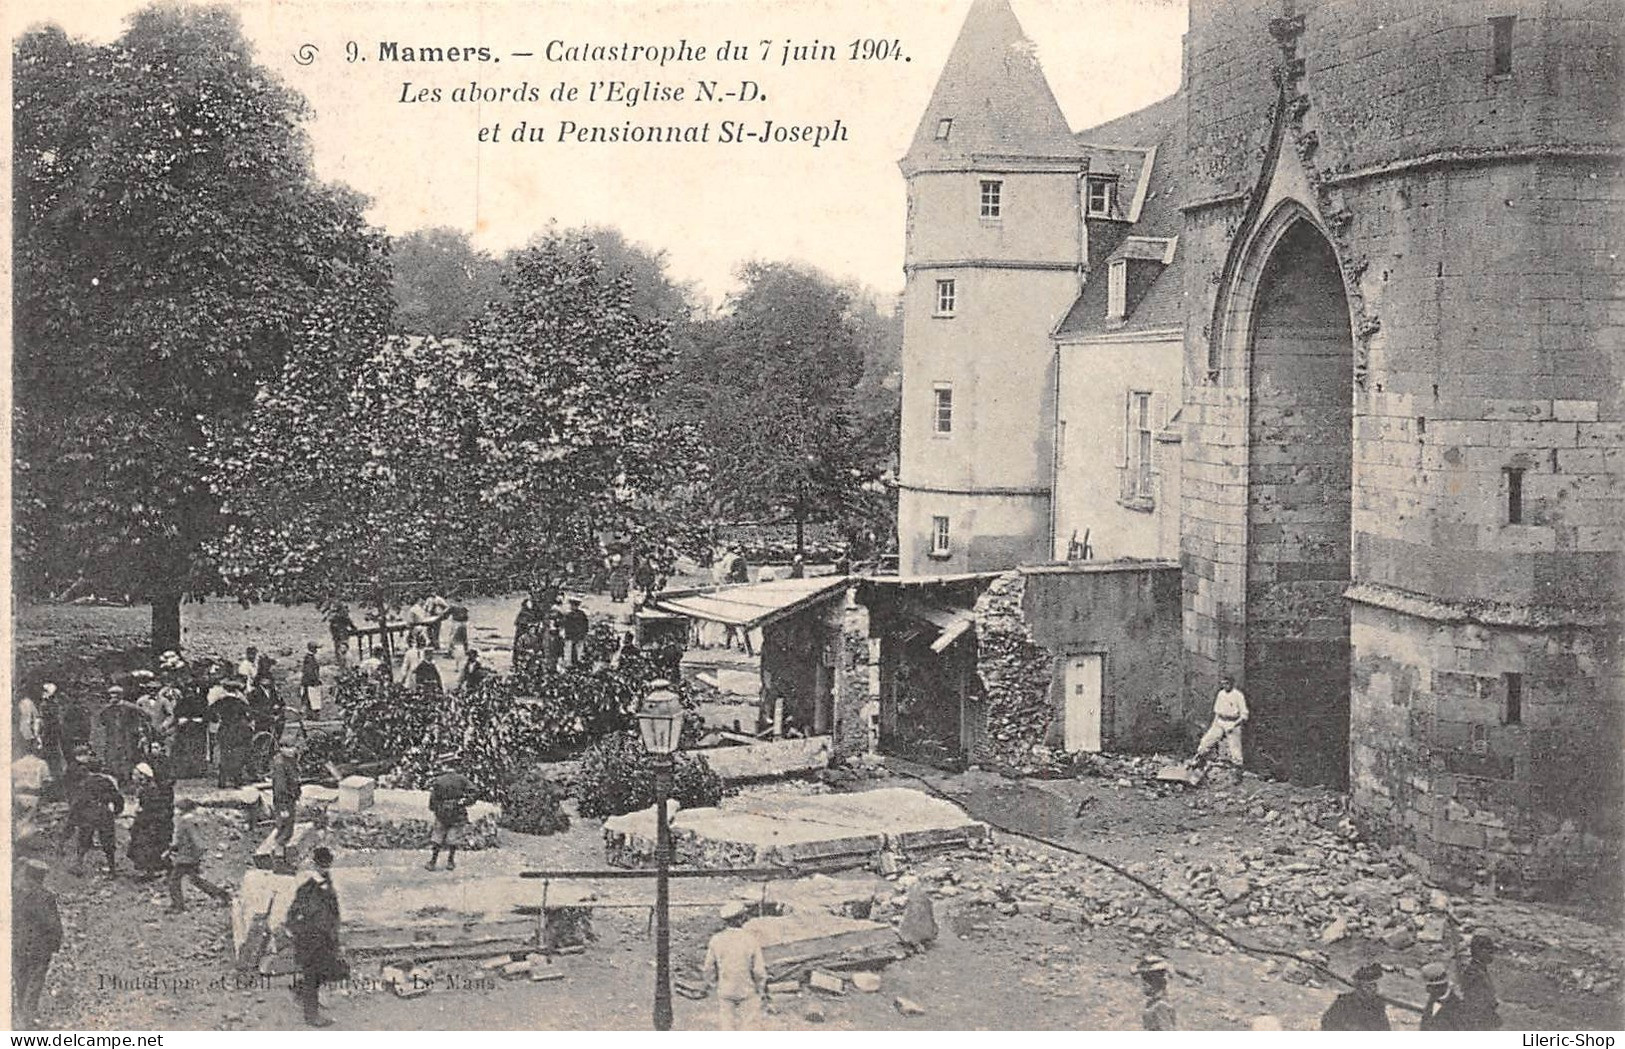 Catastrophe Du 7 Juin 1904 - Les Abords De L'Église N.D Et Du Pensionnat St-Joseph - Phototypie . J. Bouveret - Cpa - Mamers